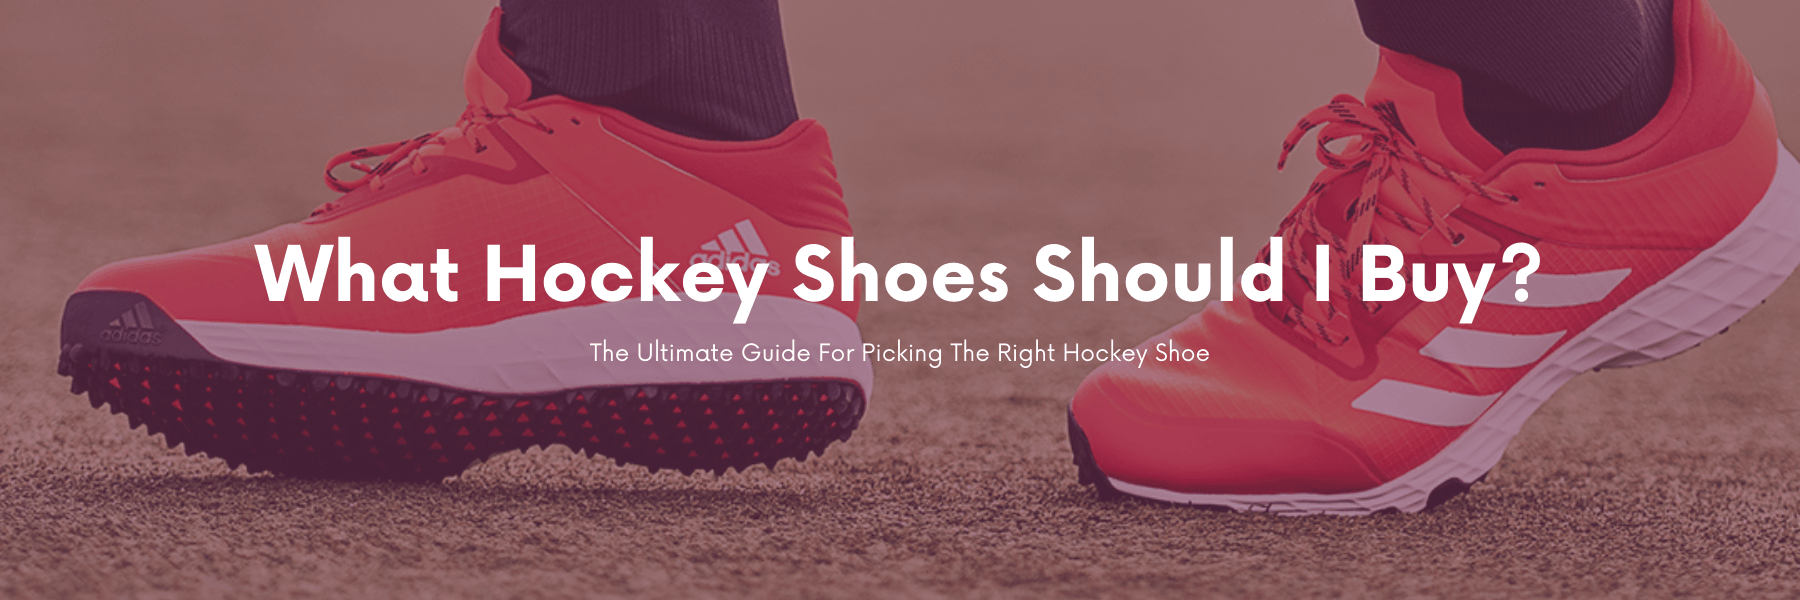 Spiller skak længde retort What Hockey Shoes Should I Buy? | Adult Hockey Shoes | Hockey Shoes